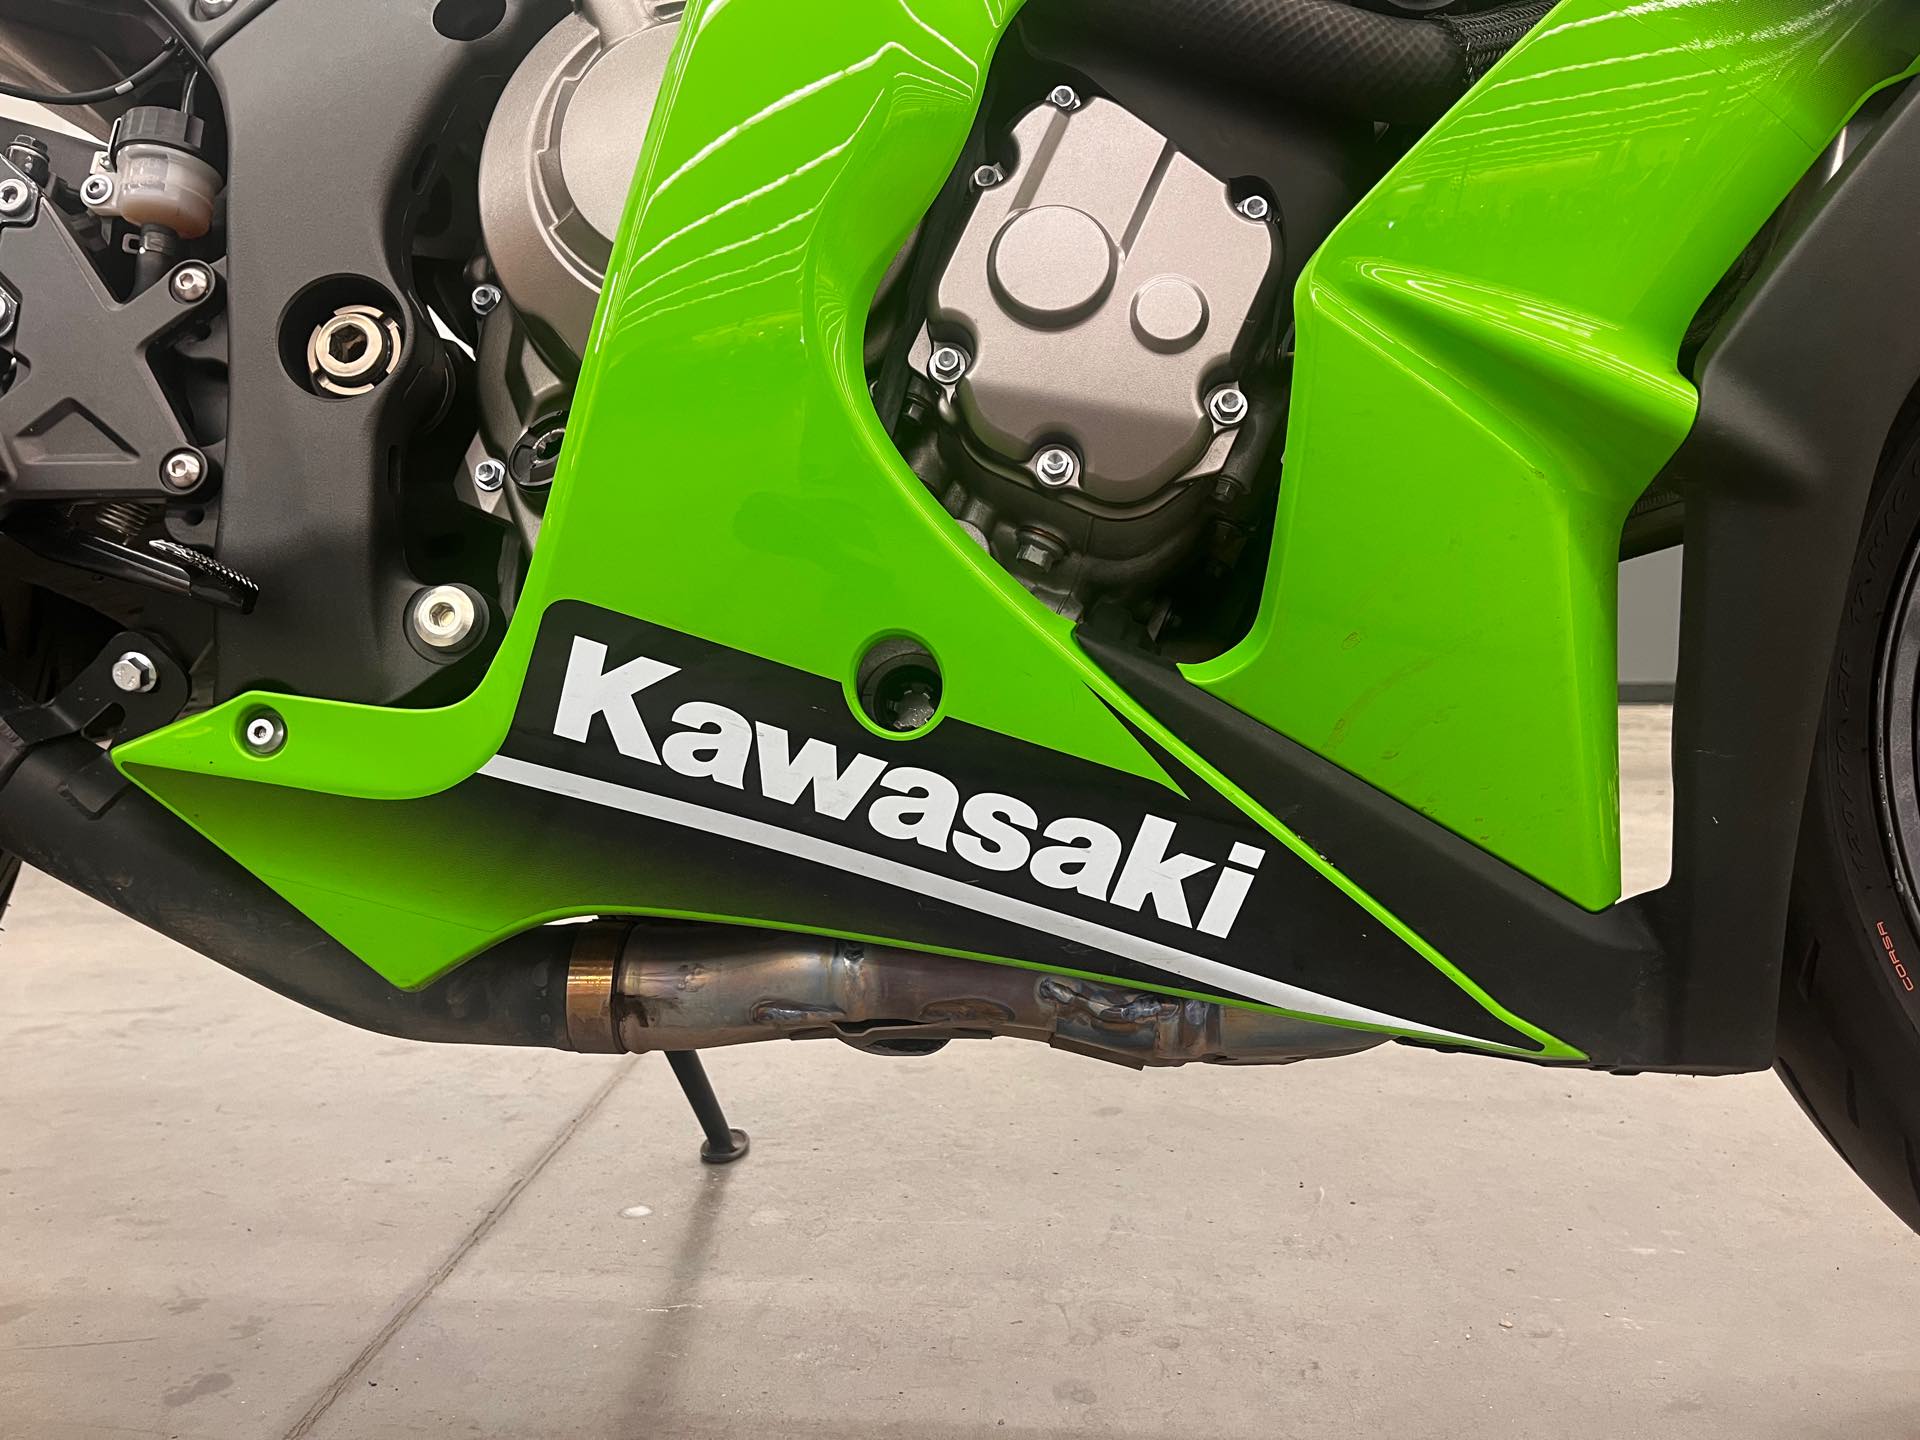 2015 KAWASAKI ZX1000JFFA at Aces Motorcycles - Denver